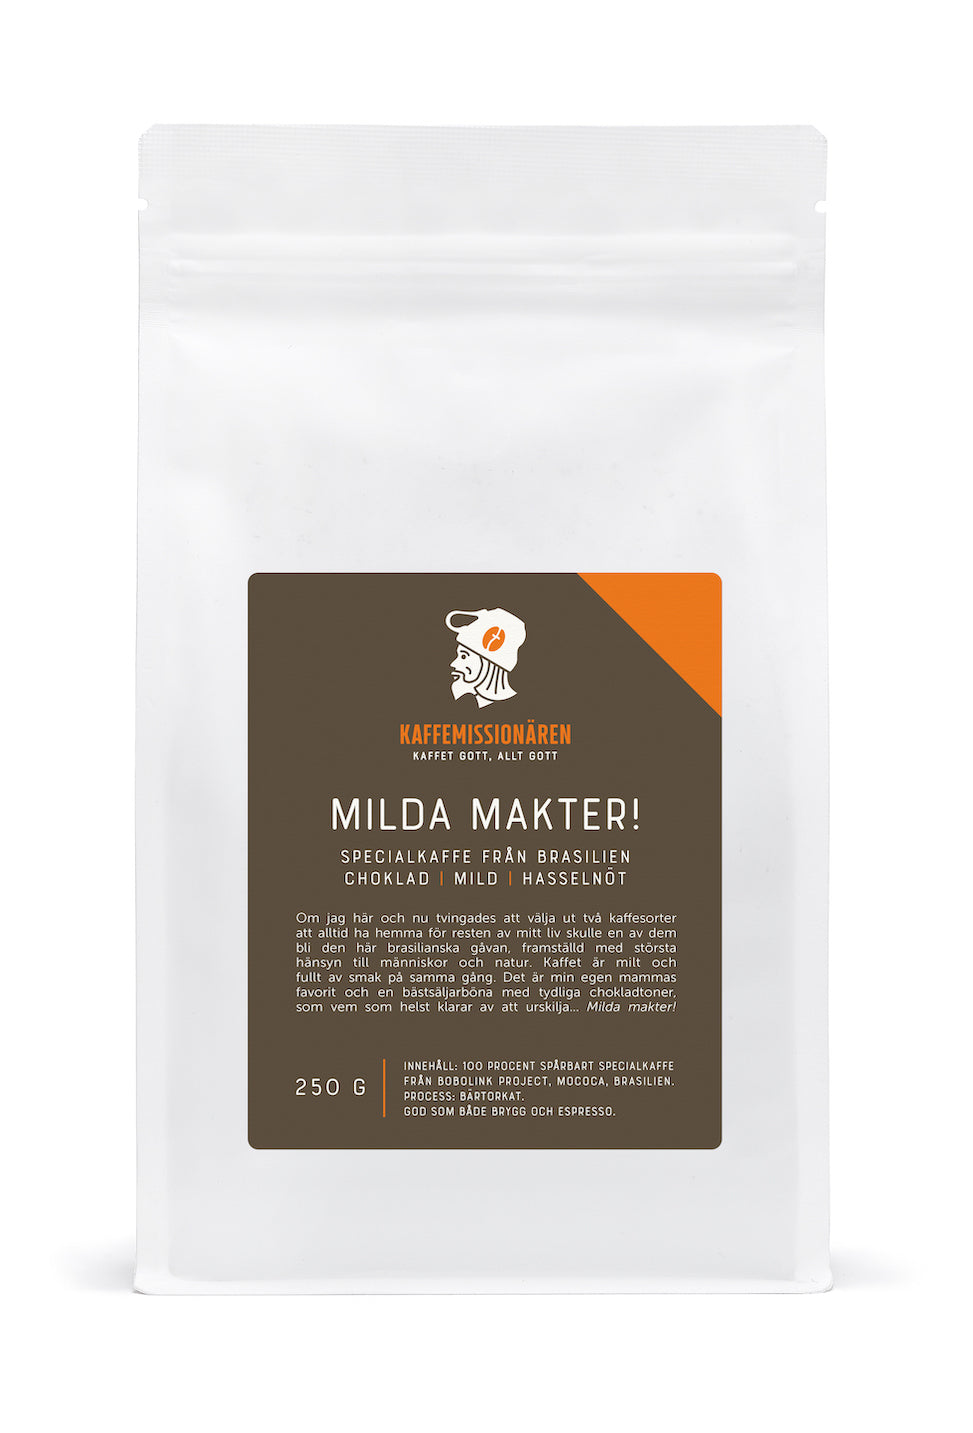 Milda Makter! | Specialkaffe från Brasilien